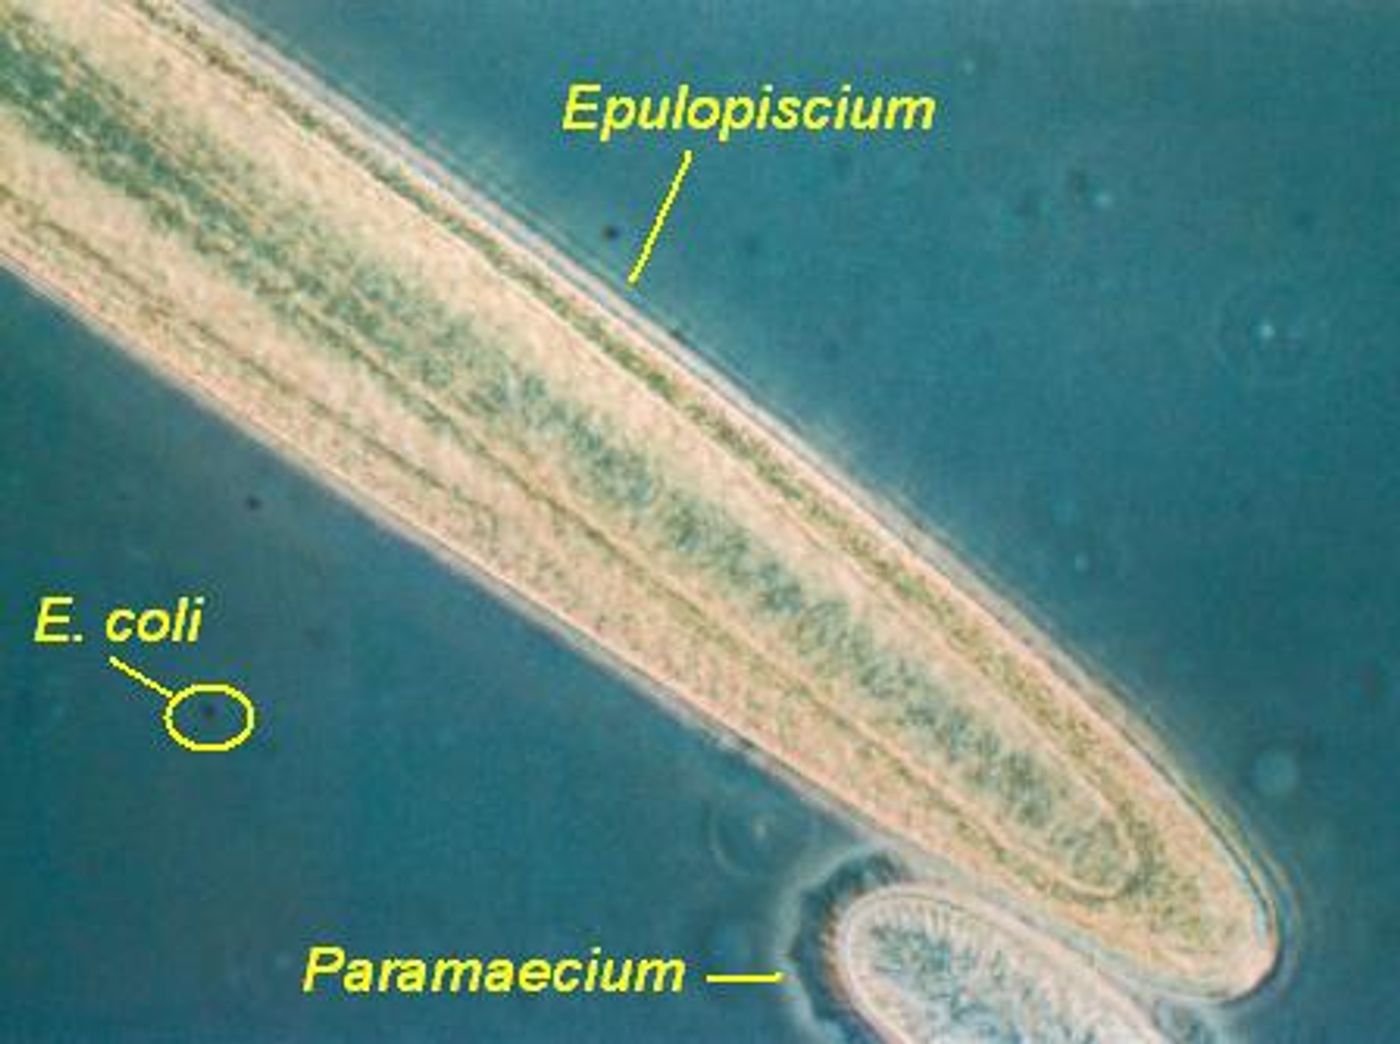 Epulopiscium dwarfs this E. coli cell.